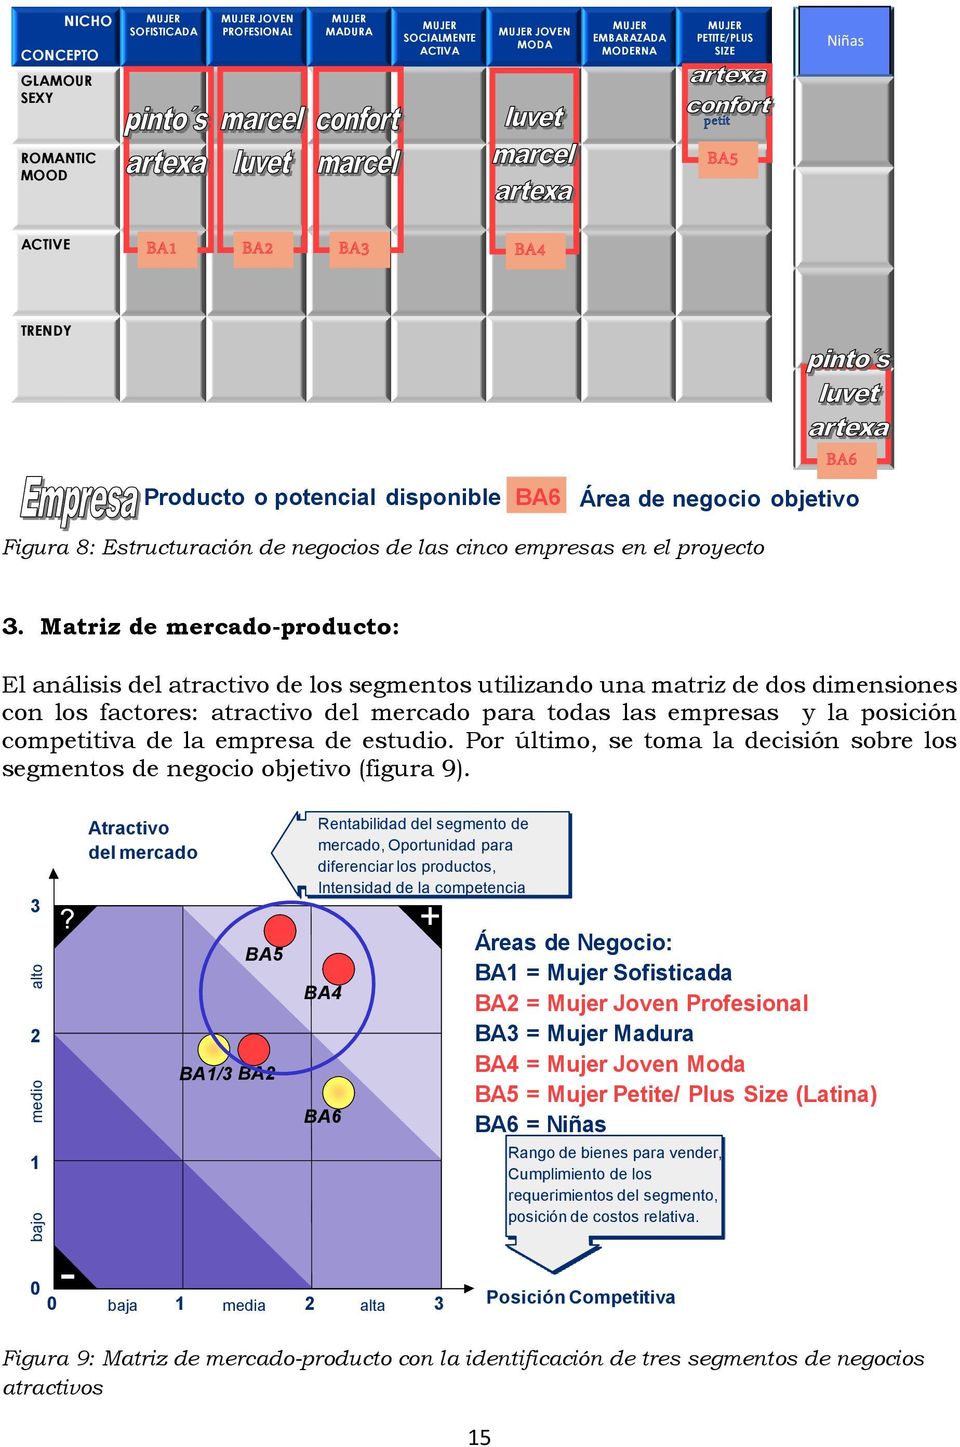 Matriz de mercado-producto: El análisis del atractivo de los segmentos utilizando una matriz de dos dimensiones con los factores: atractivo del mercado para todas las empresas y la posición